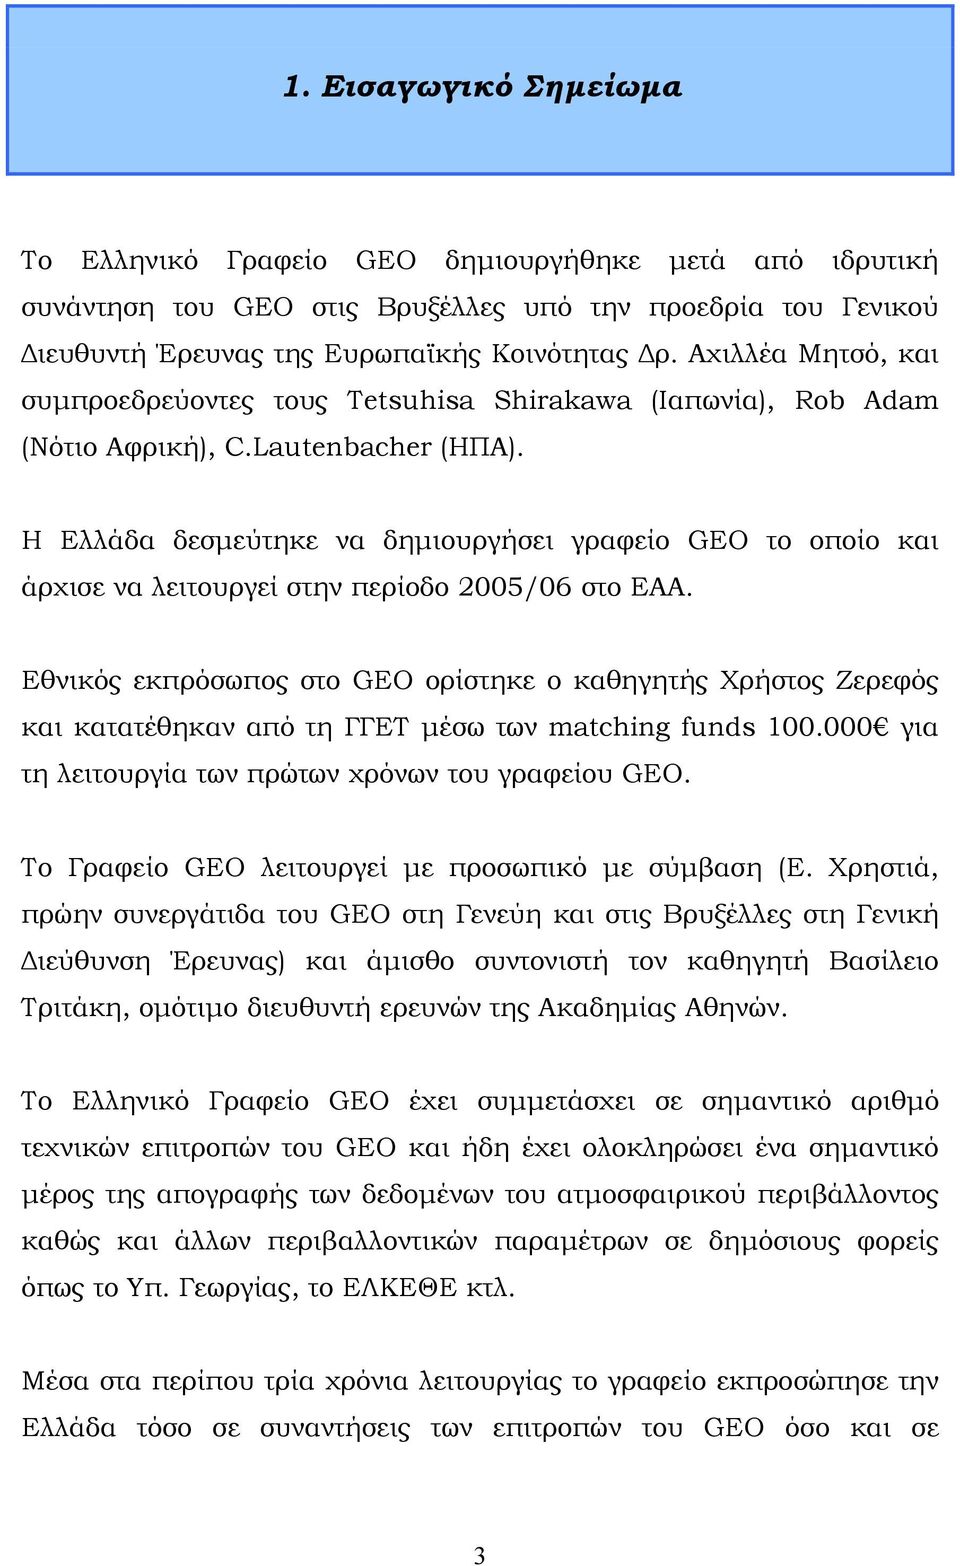 Η Ελλάδα δεσμεύτηκε να δημιουργήσει γραφείο GEO το οποίο και άρχισε να λειτουργεί στην περίοδο 2005/06 στο ΕΑΑ.